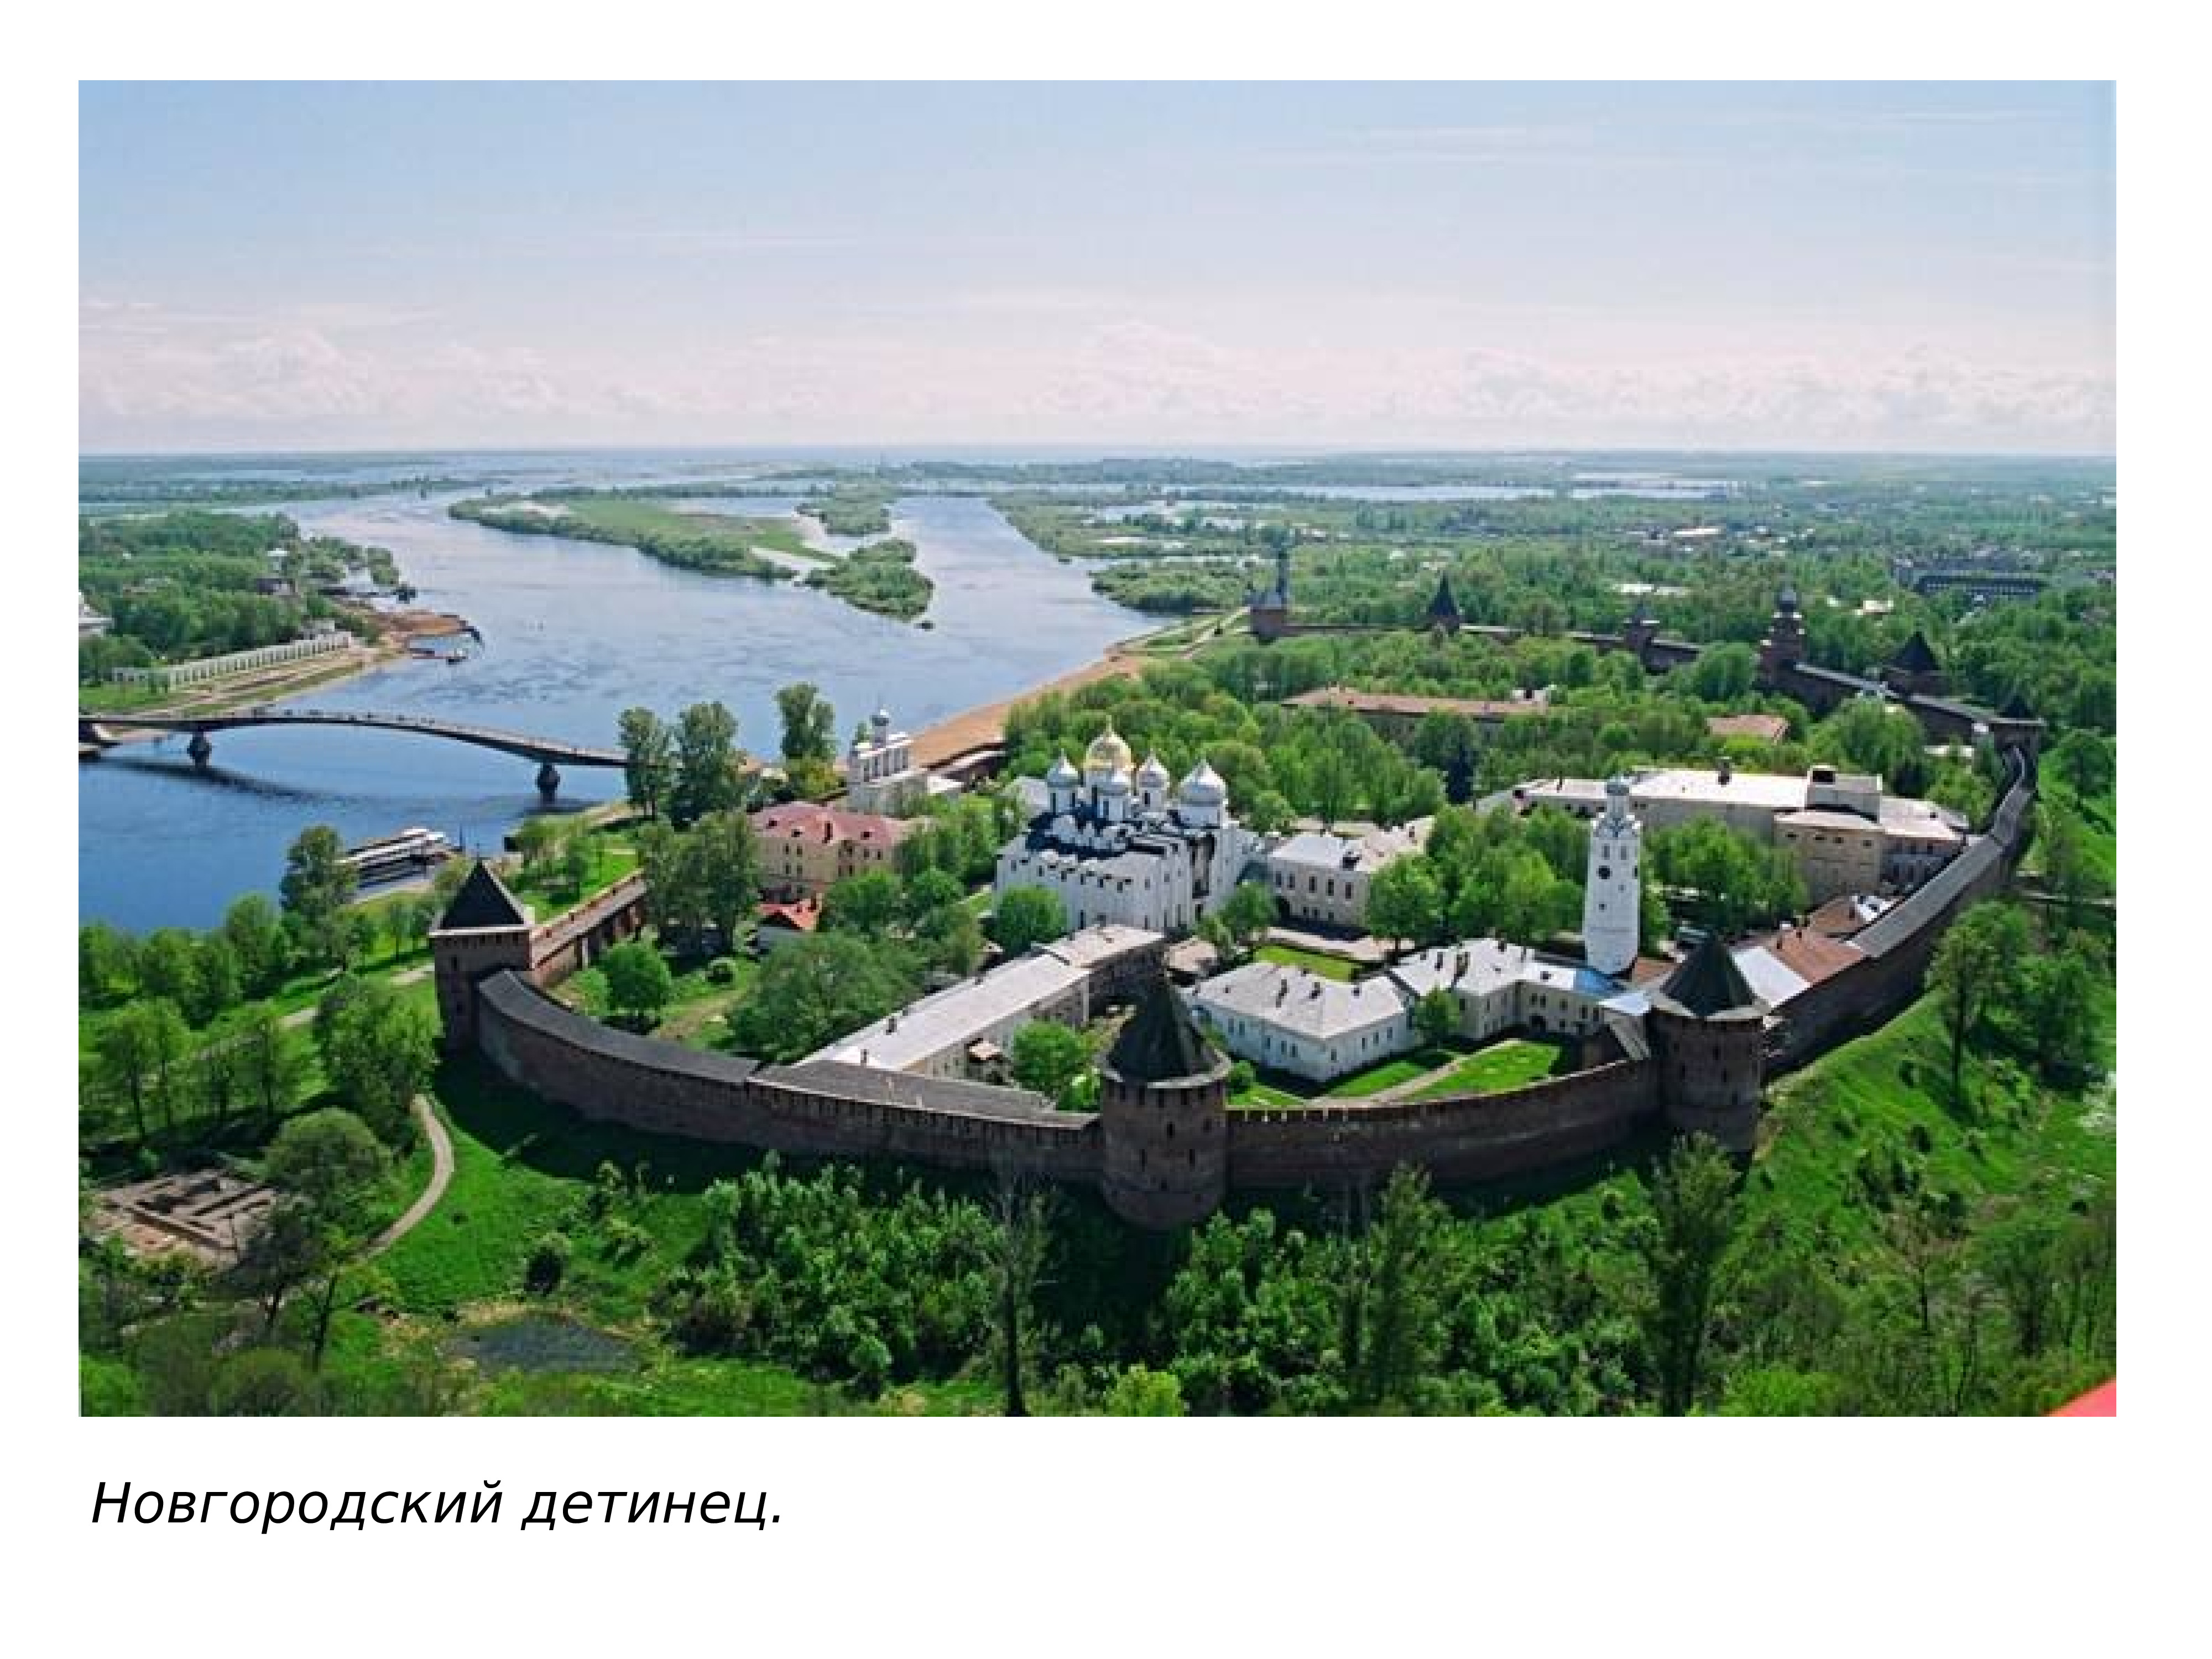 Новгородский Кремль (Детинец), г. Великий Новгород